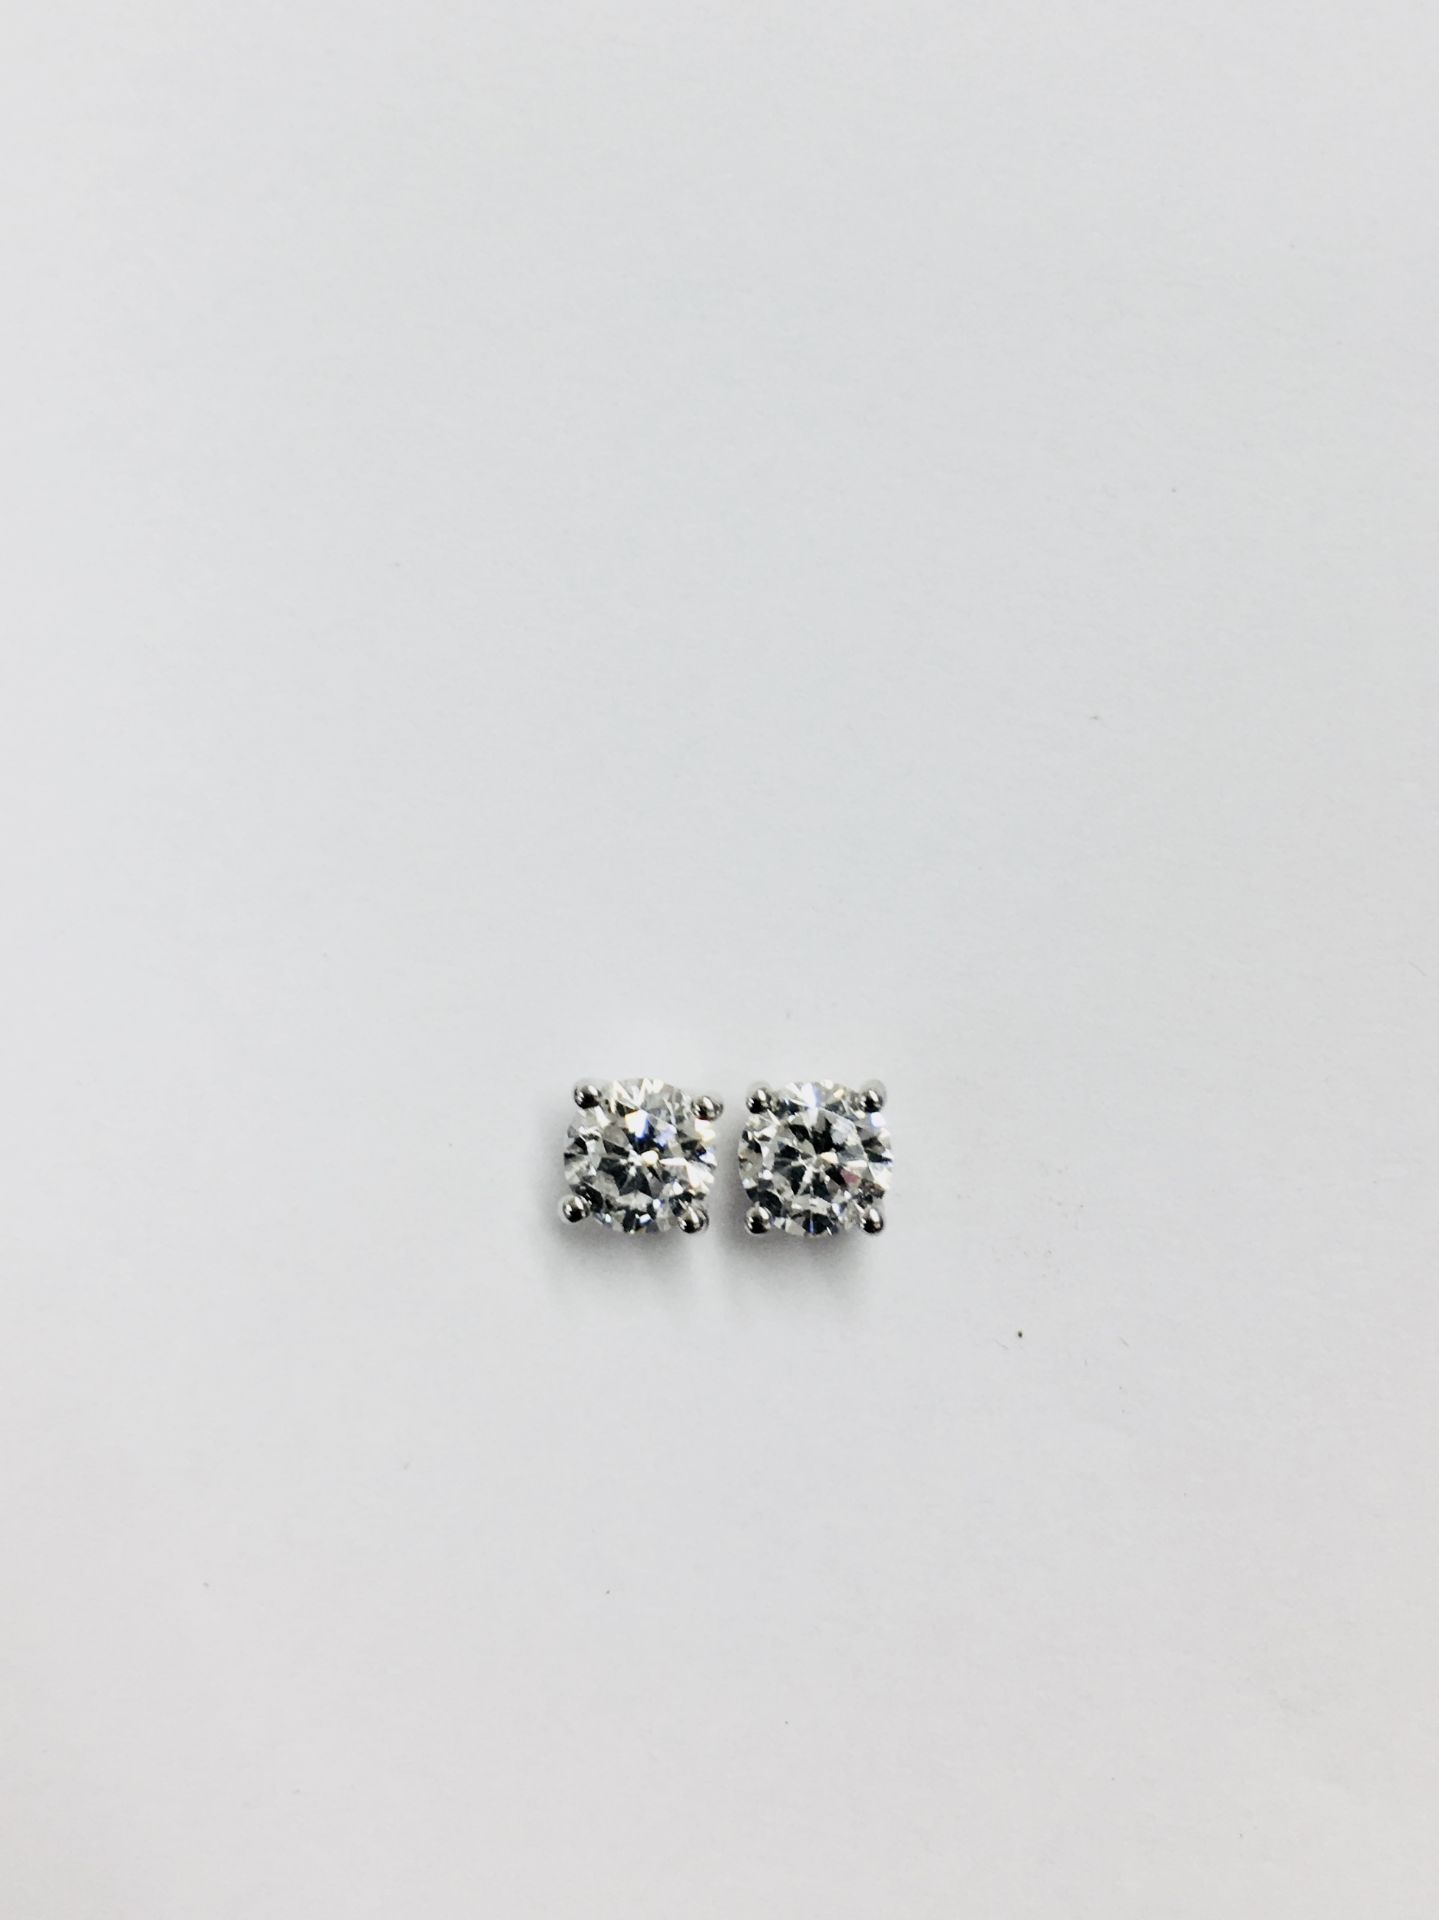 1.00ct diamond solitaire earrings set in platinum. 2 x brilliant cut diamonds, 0.50ct ( enhanced ) i - Bild 3 aus 3